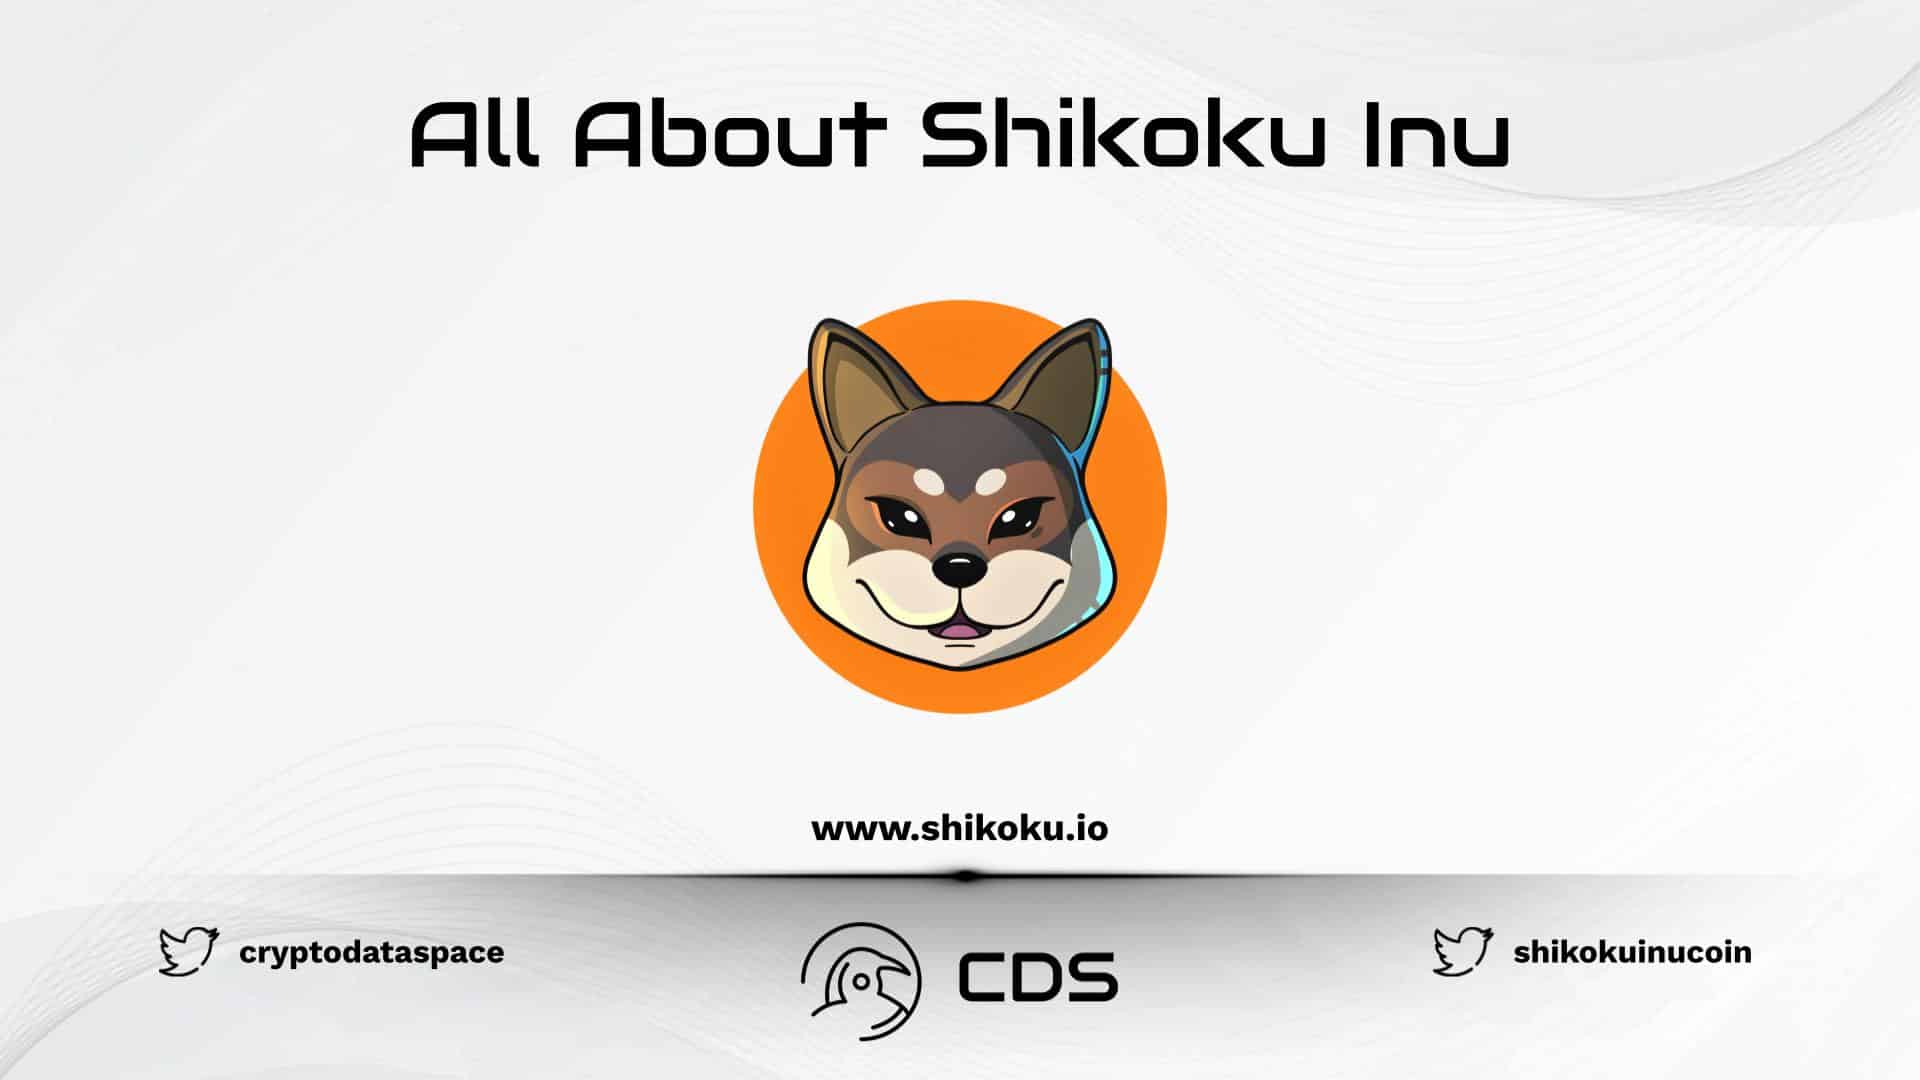 All About Shikoku Inu